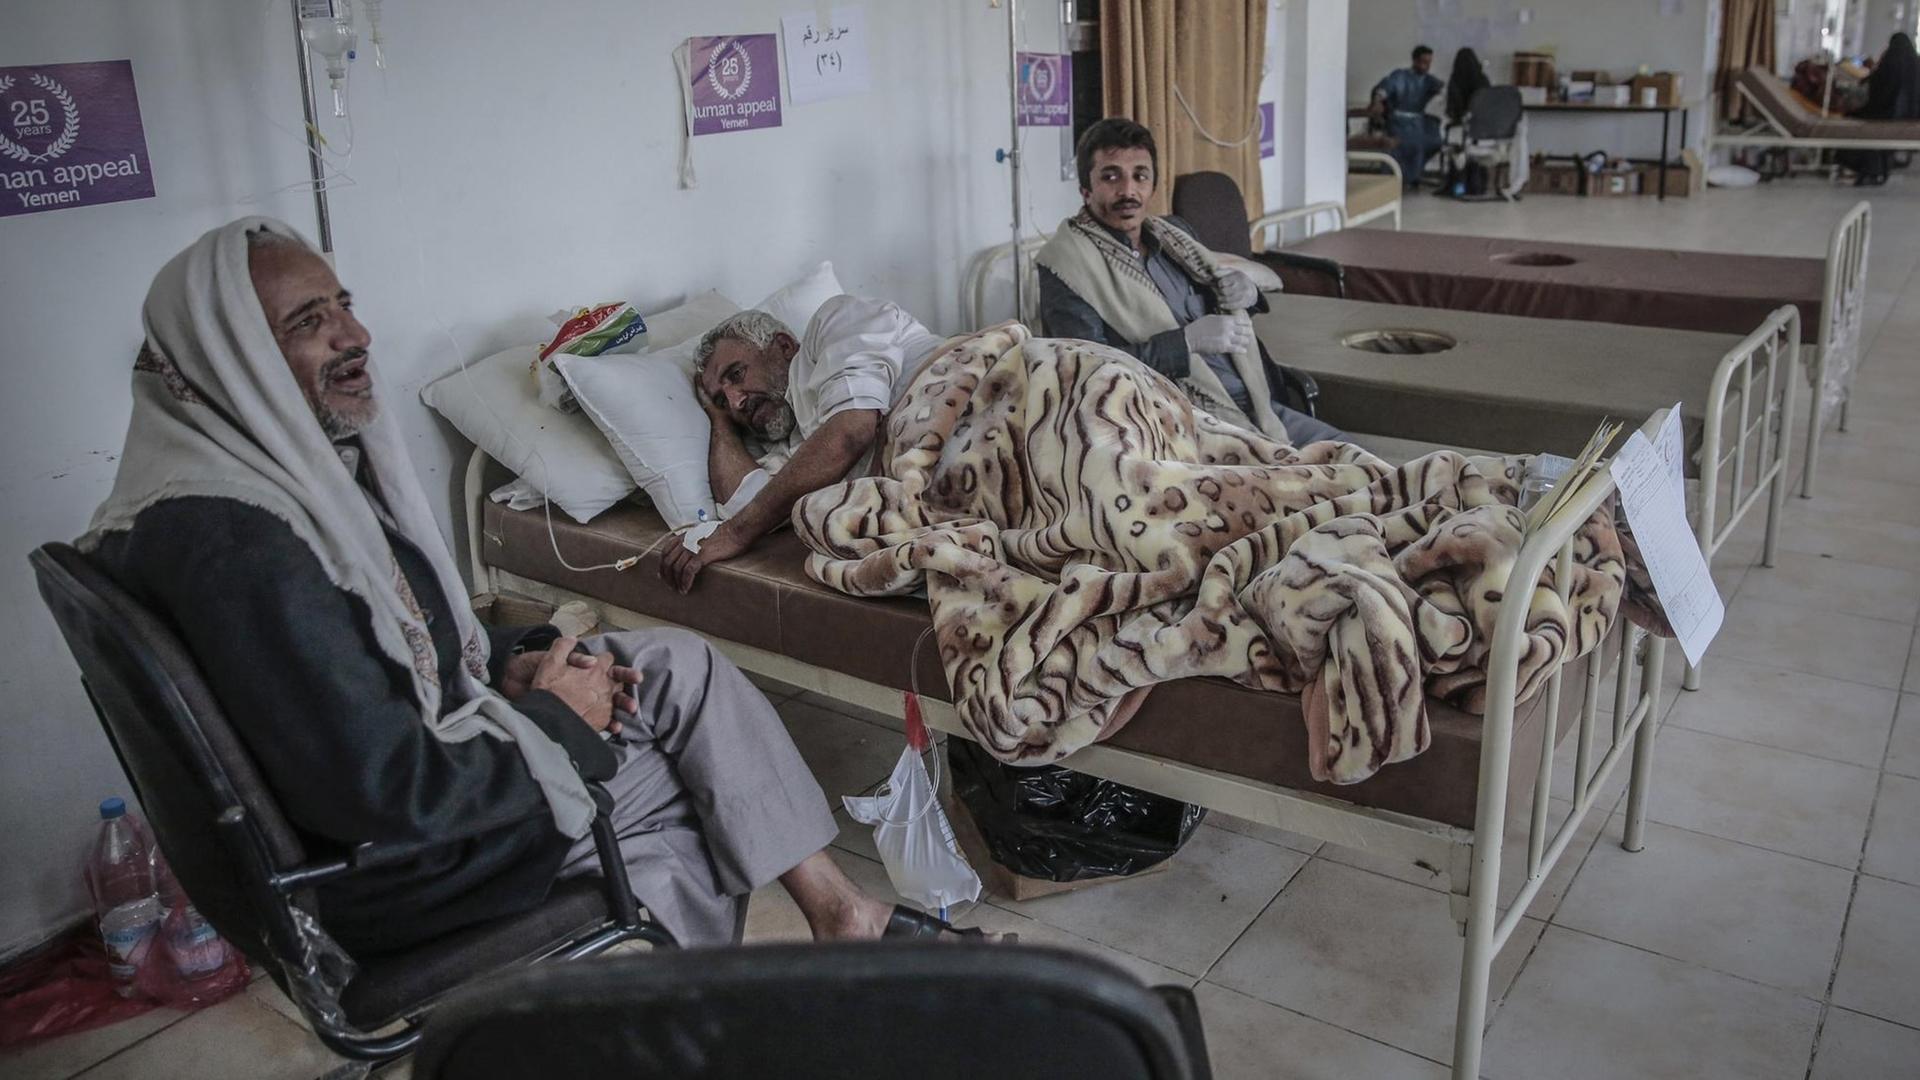 Ein jemenitischer Mann mit Verdacht auf Cholera wird am 24.05.2017 in einem Krankenhaus in Sanaa (Jemen) behandelt. Die Weltgesundheitsorganisation (WHO) meldet aus dem Jemen, dass mittlerweile mehr als 30.000 Verdachtsfälle registriert worden seien.